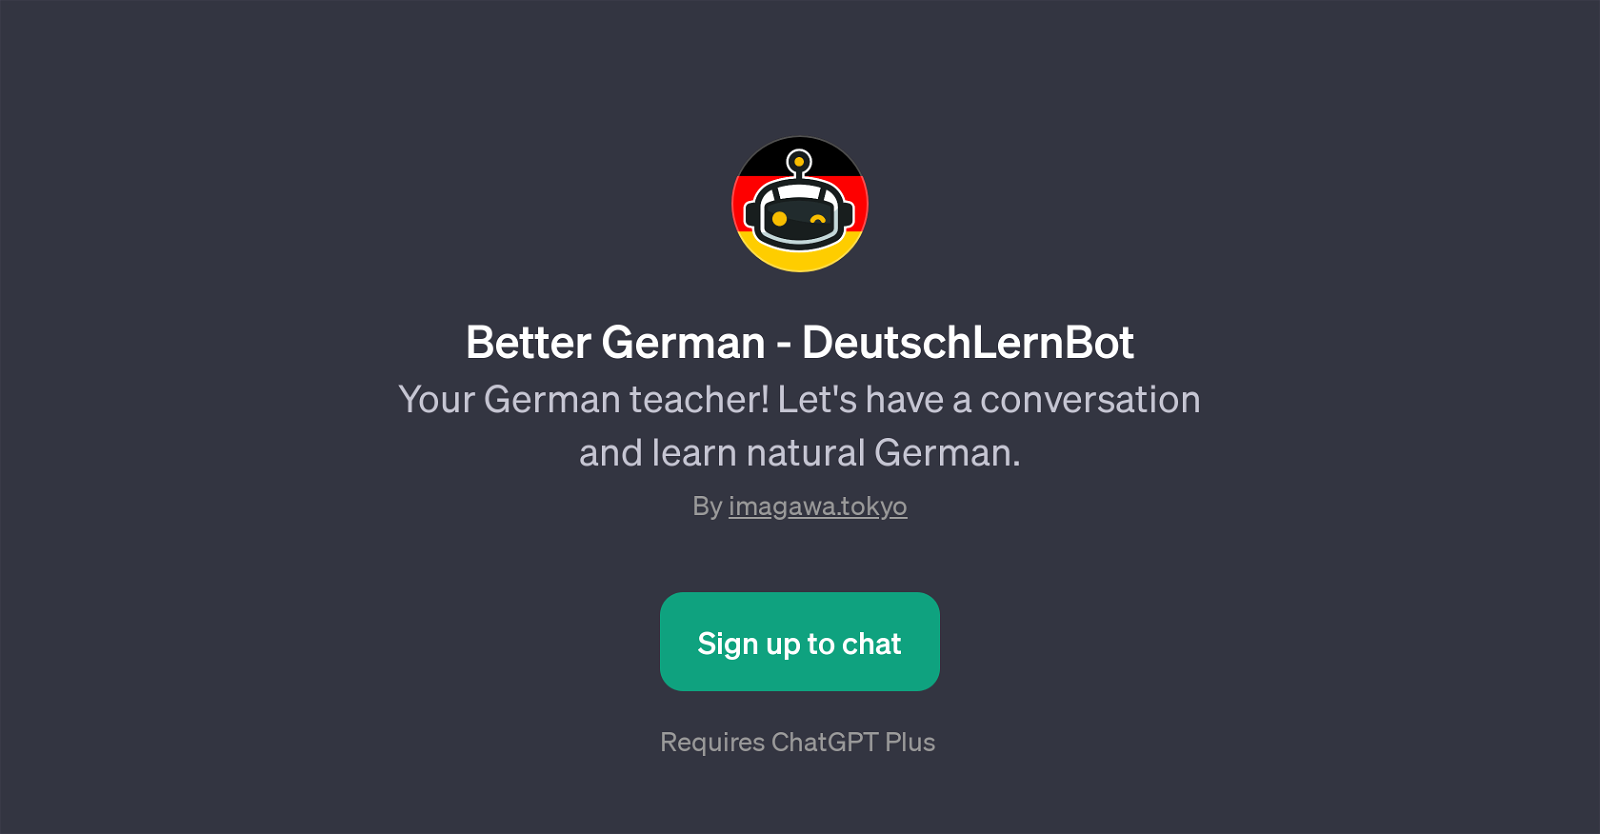 Better German - DeutschLernBot website